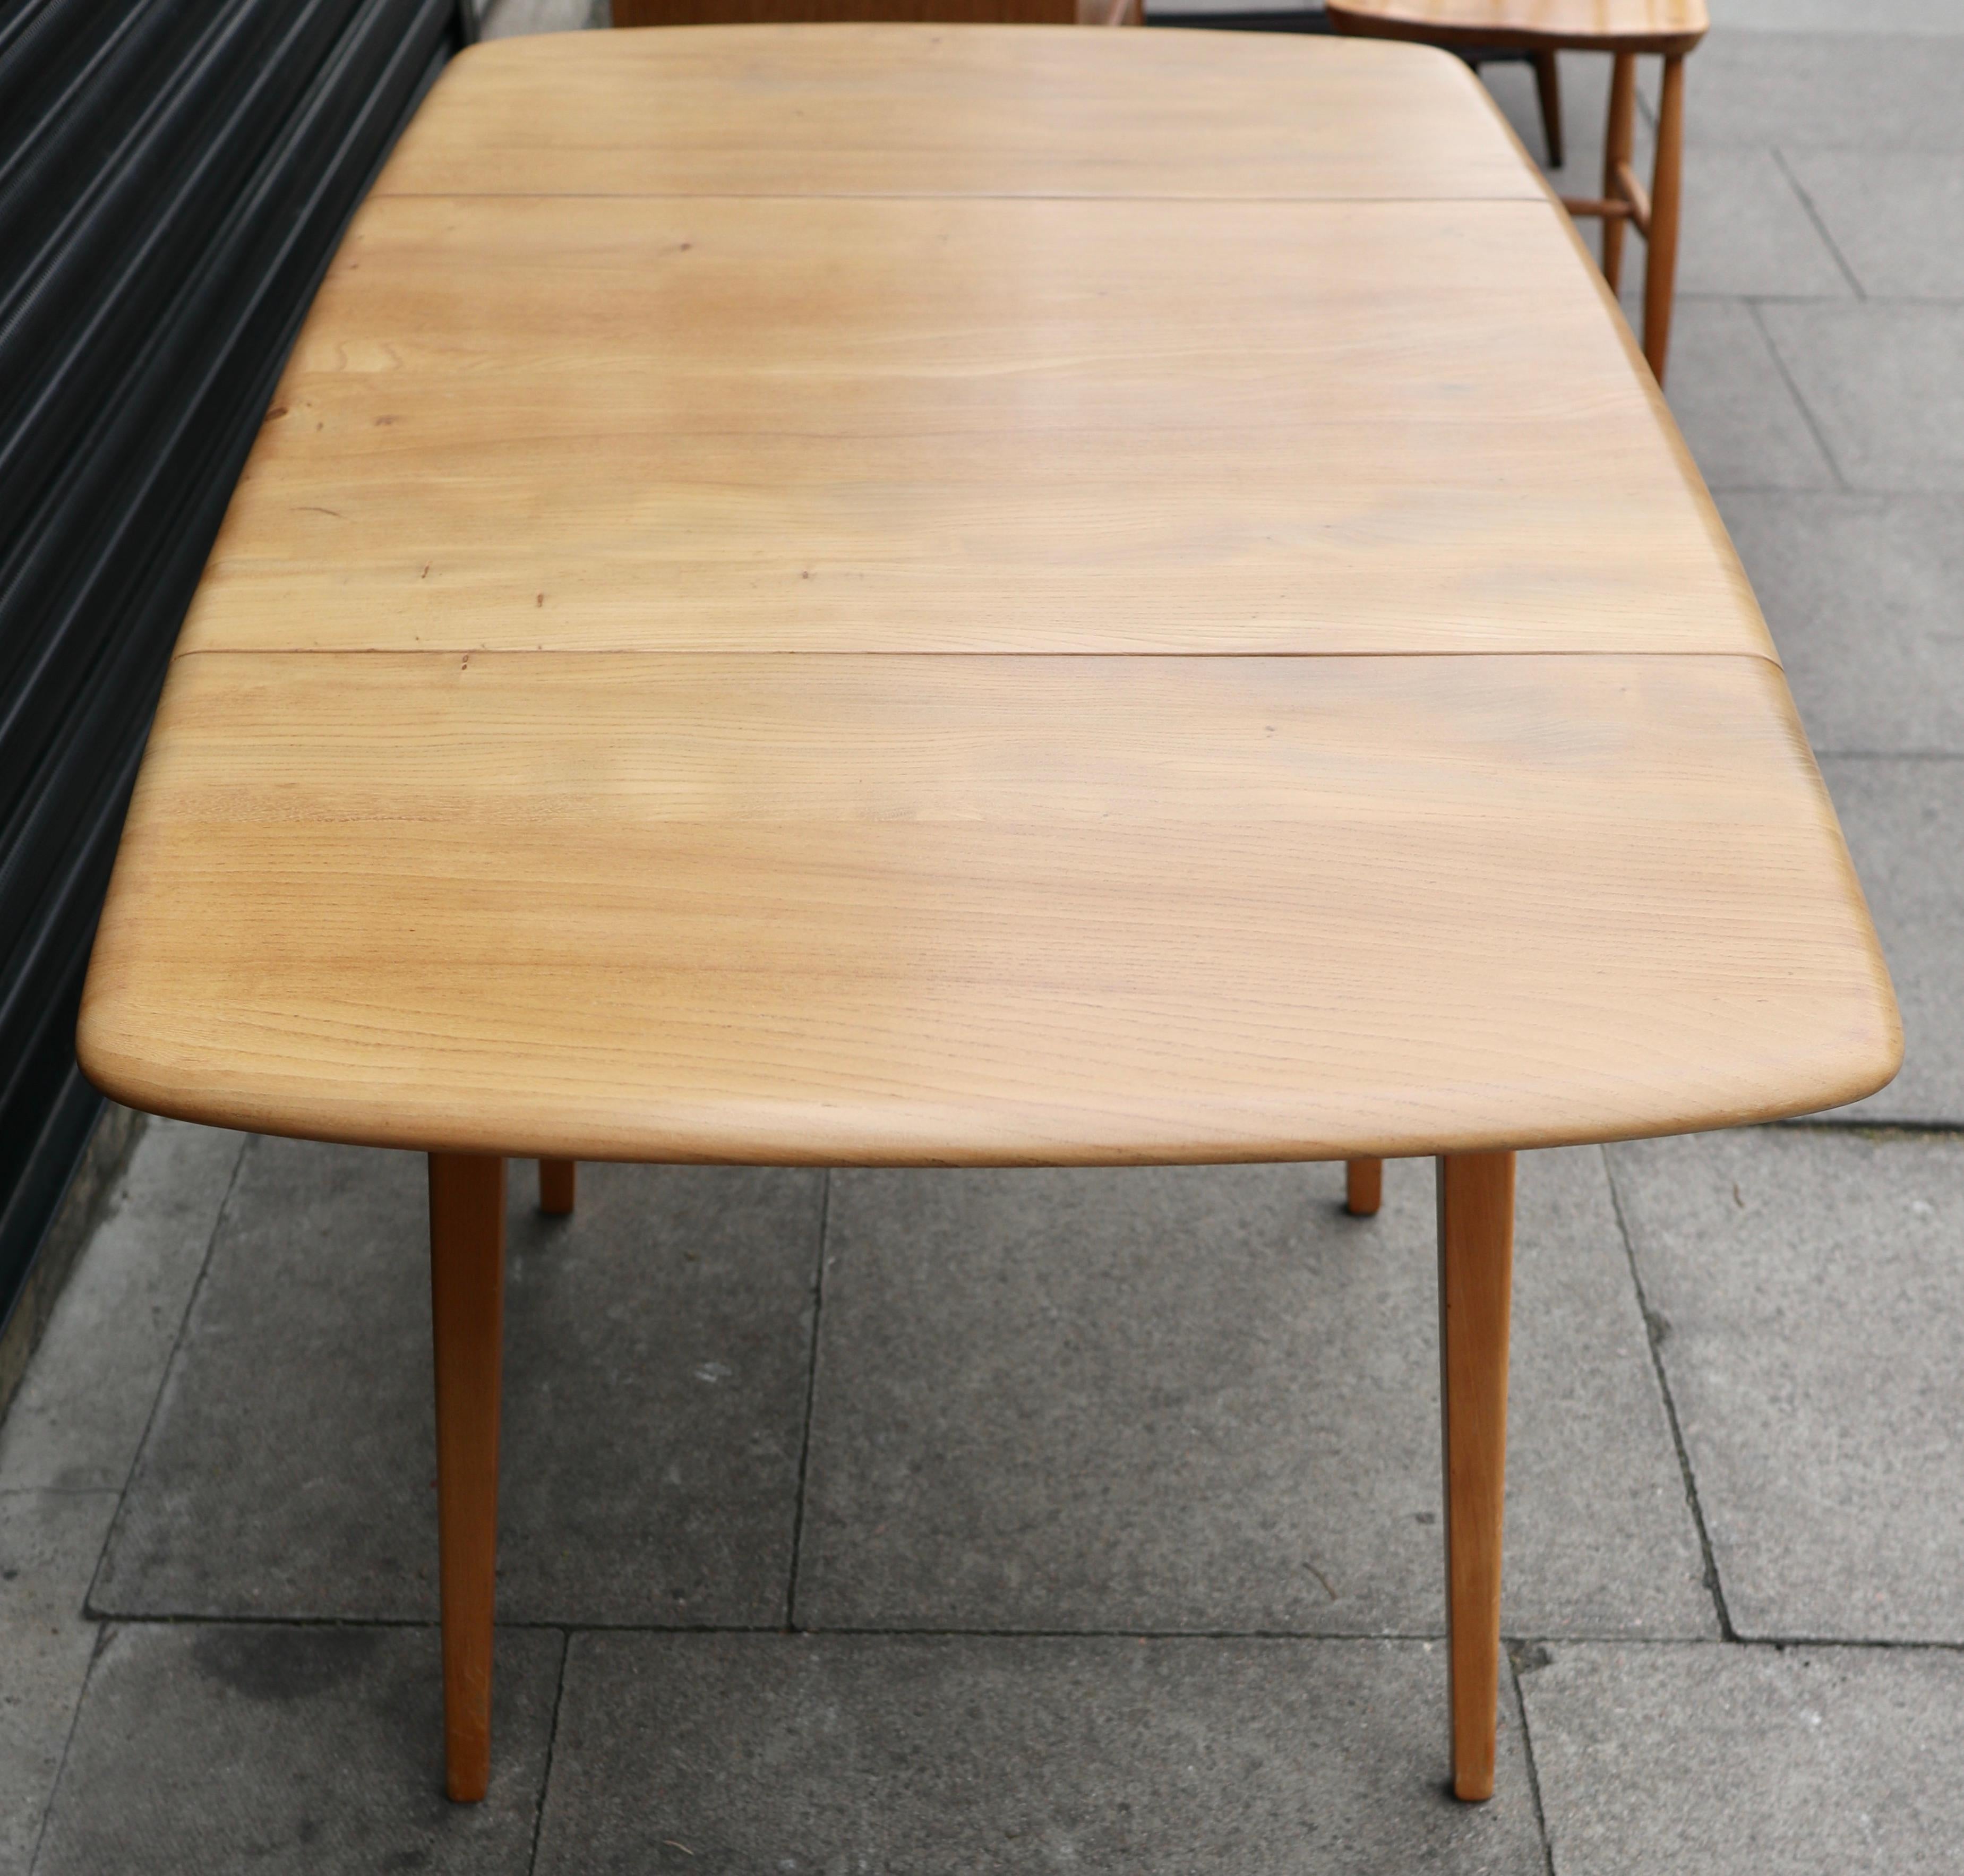 Ein rechteckiger Esstisch mit Klappe aus den 1960er Jahren von Ercol.  Dieser Tisch hat eine Platte aus massivem Ulmenholz und ein vierbeiniges Untergestell aus massiver Buche. Er hat zwei Klapptische und ist in einem sehr guten Vintage-Zustand, da